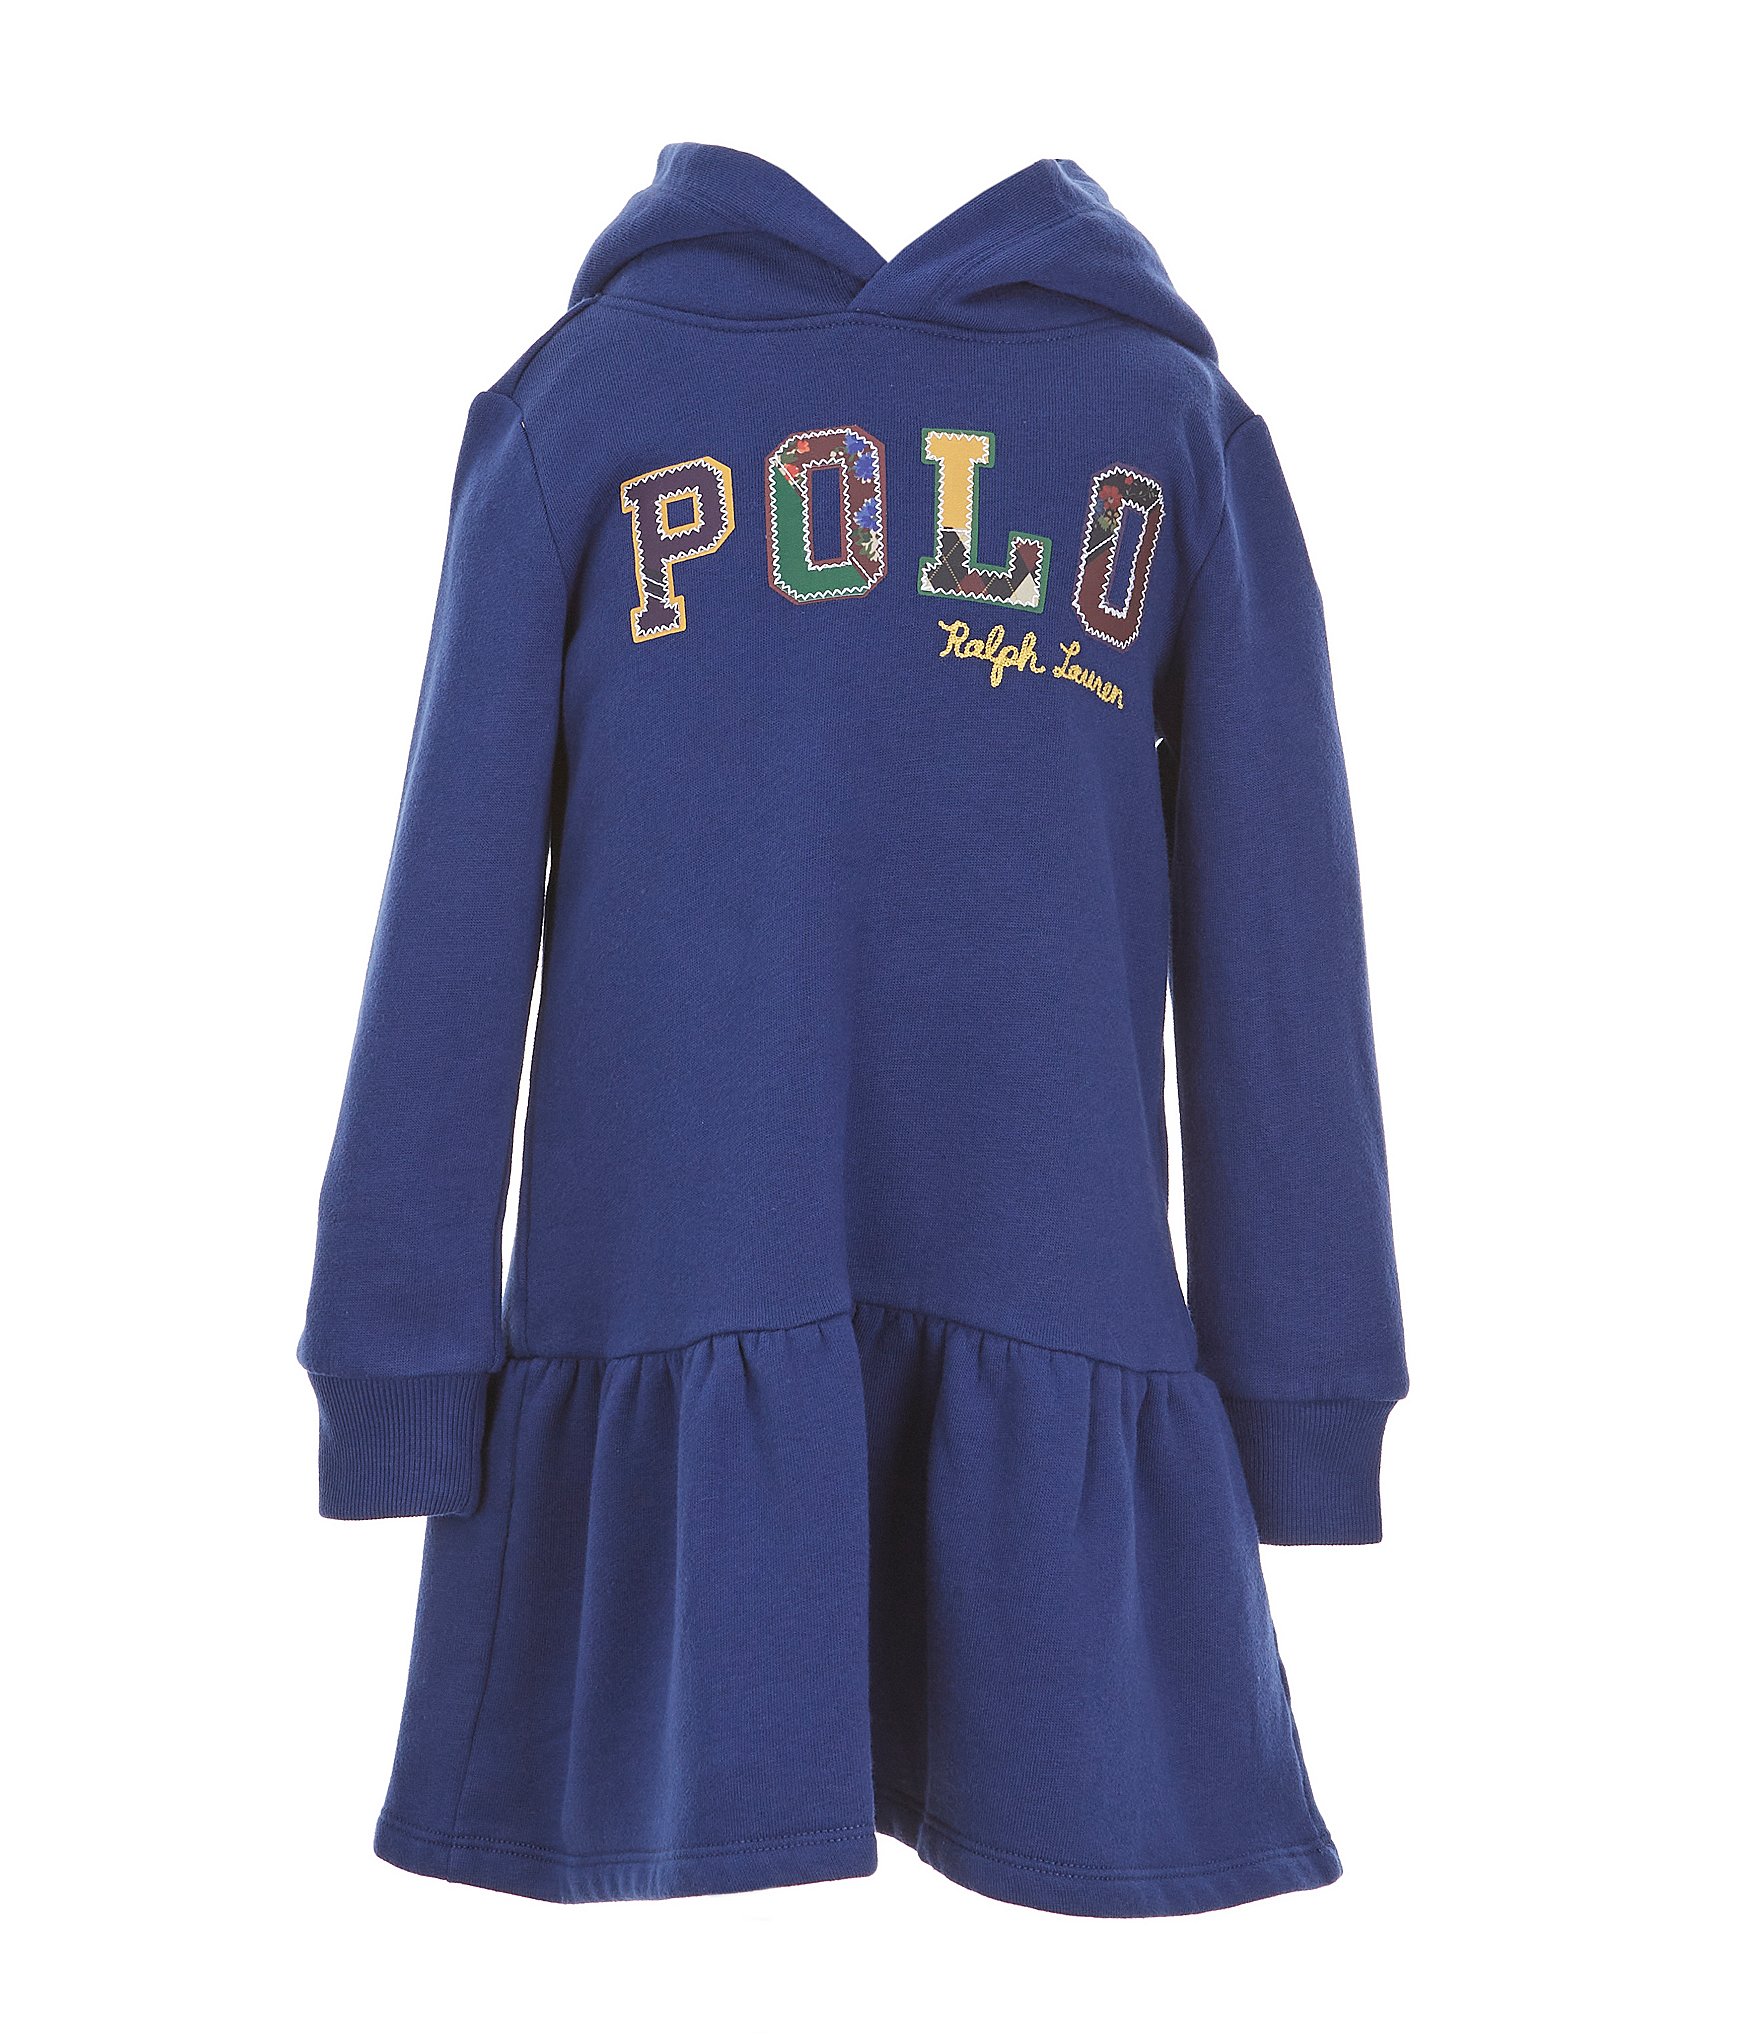 Polo Ralph Lauren Little Girls 2T-6X Fleece Jogger Pants